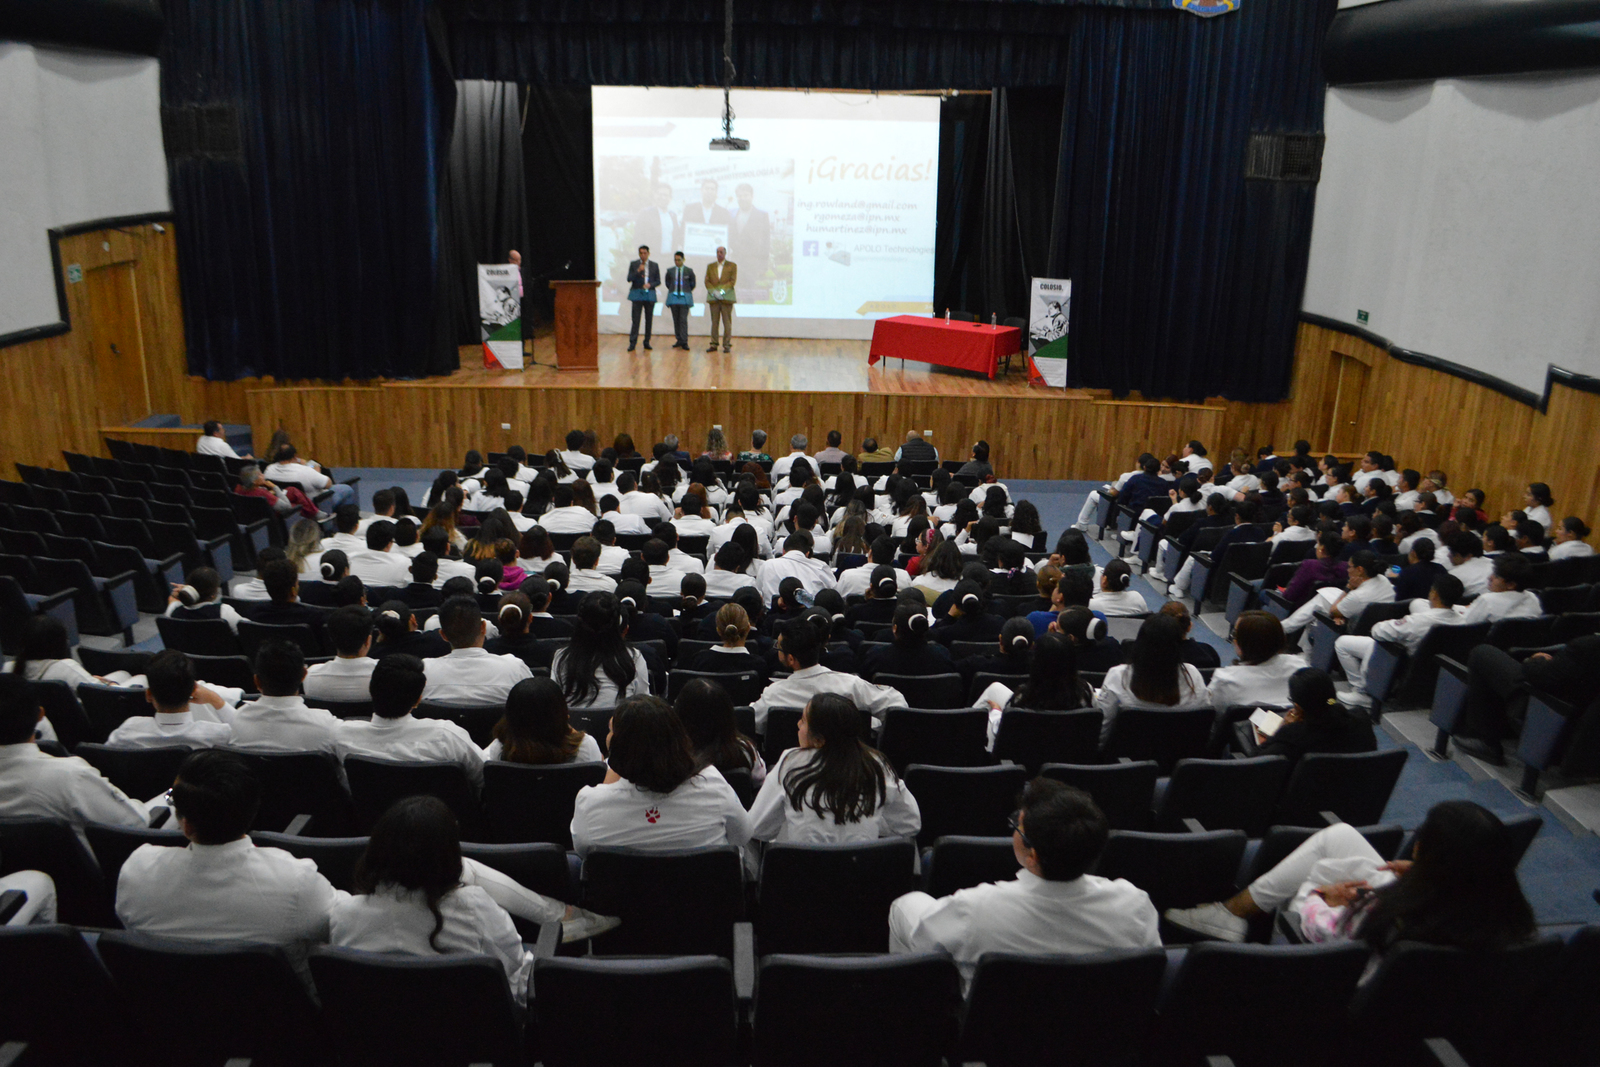 La charla de los investigadores se realizó el martes en la mañana en la Facultad de Medicina de Torreón, organizó Fundación Colosio. (ROBERTO ITURRIAGA)